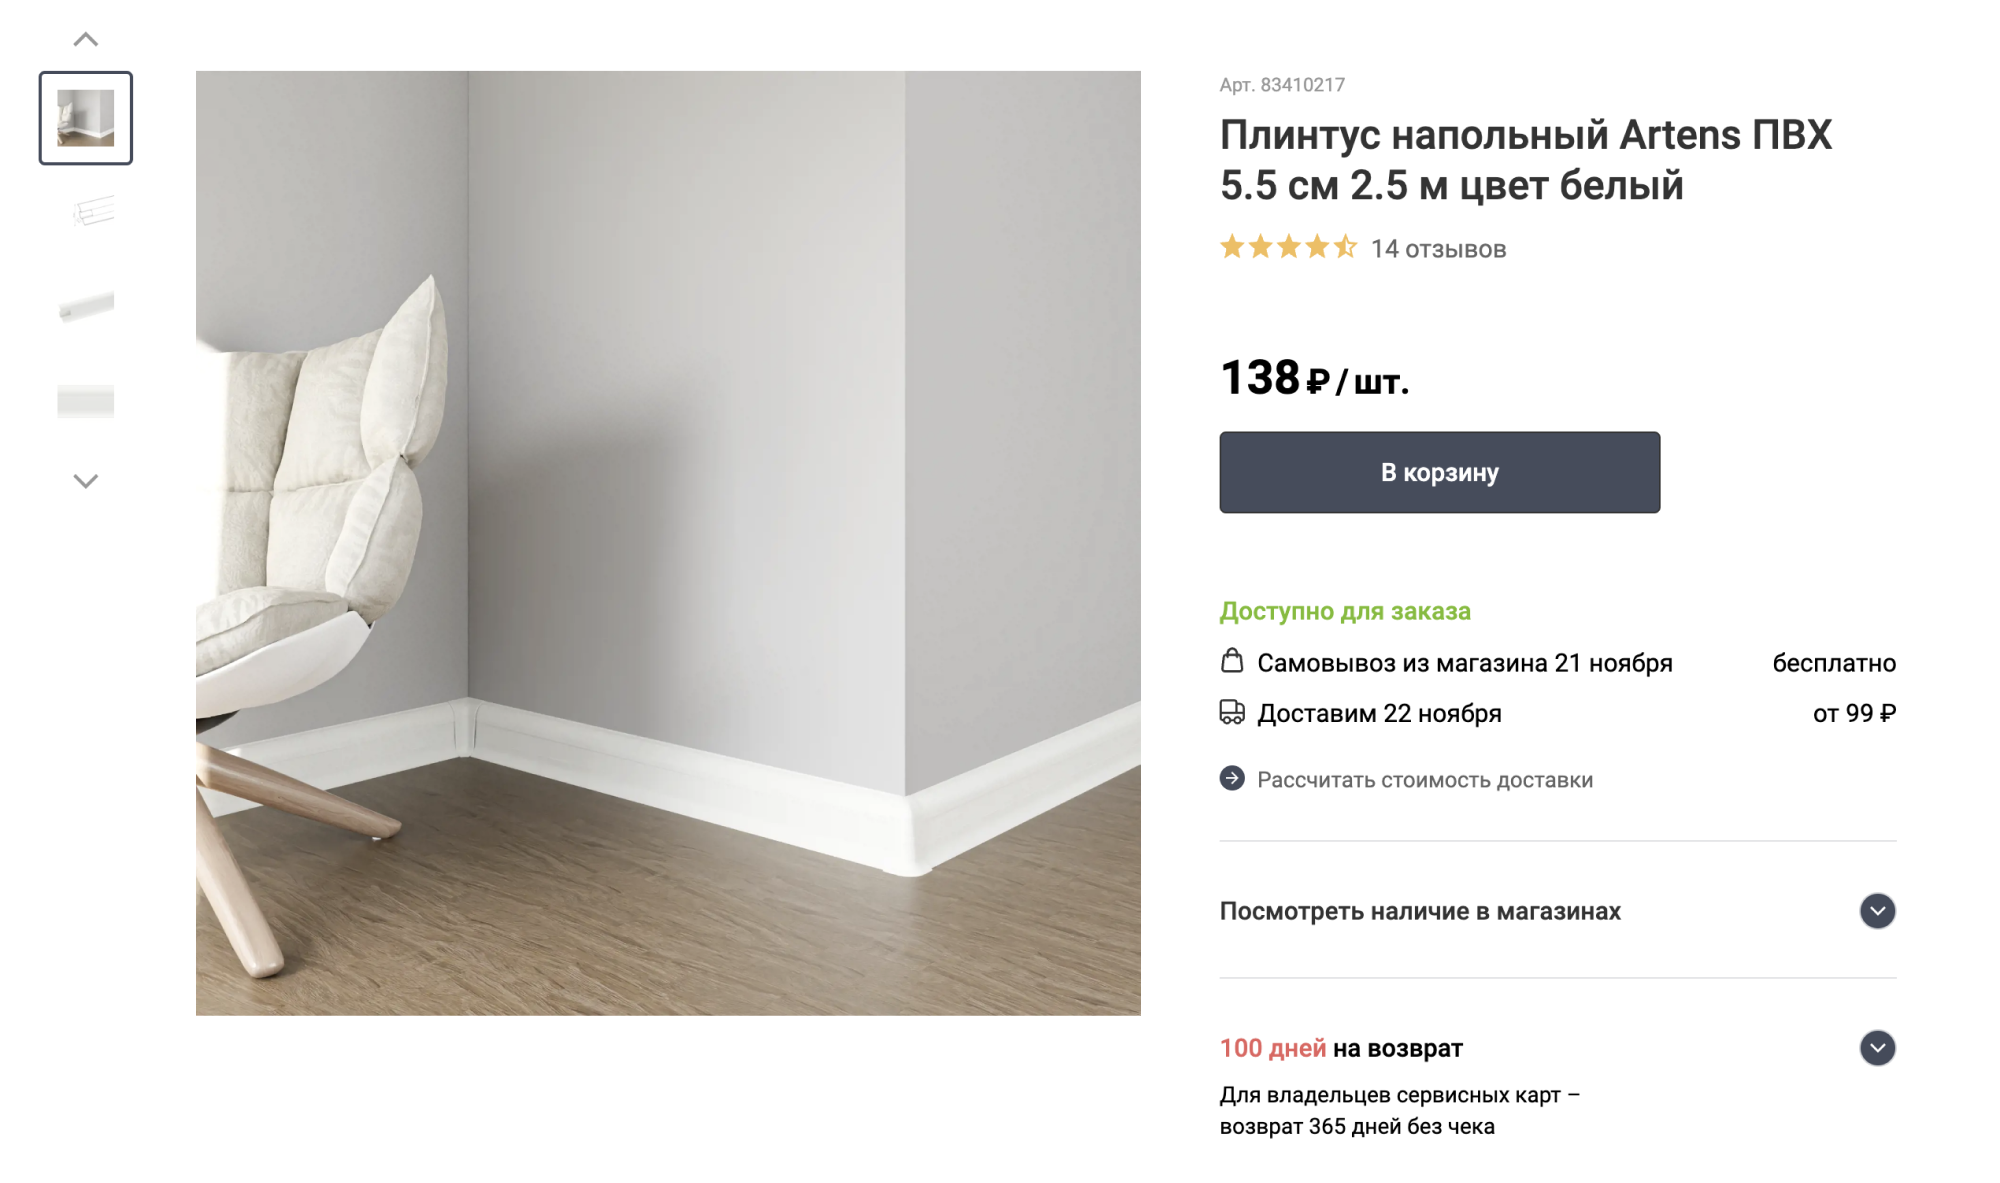 Такой же дешевый пластиковый плинтус в белом цвете выглядит лучше, чем с рисунком, имитирующим древесину. Источник: leroymerlin.ru